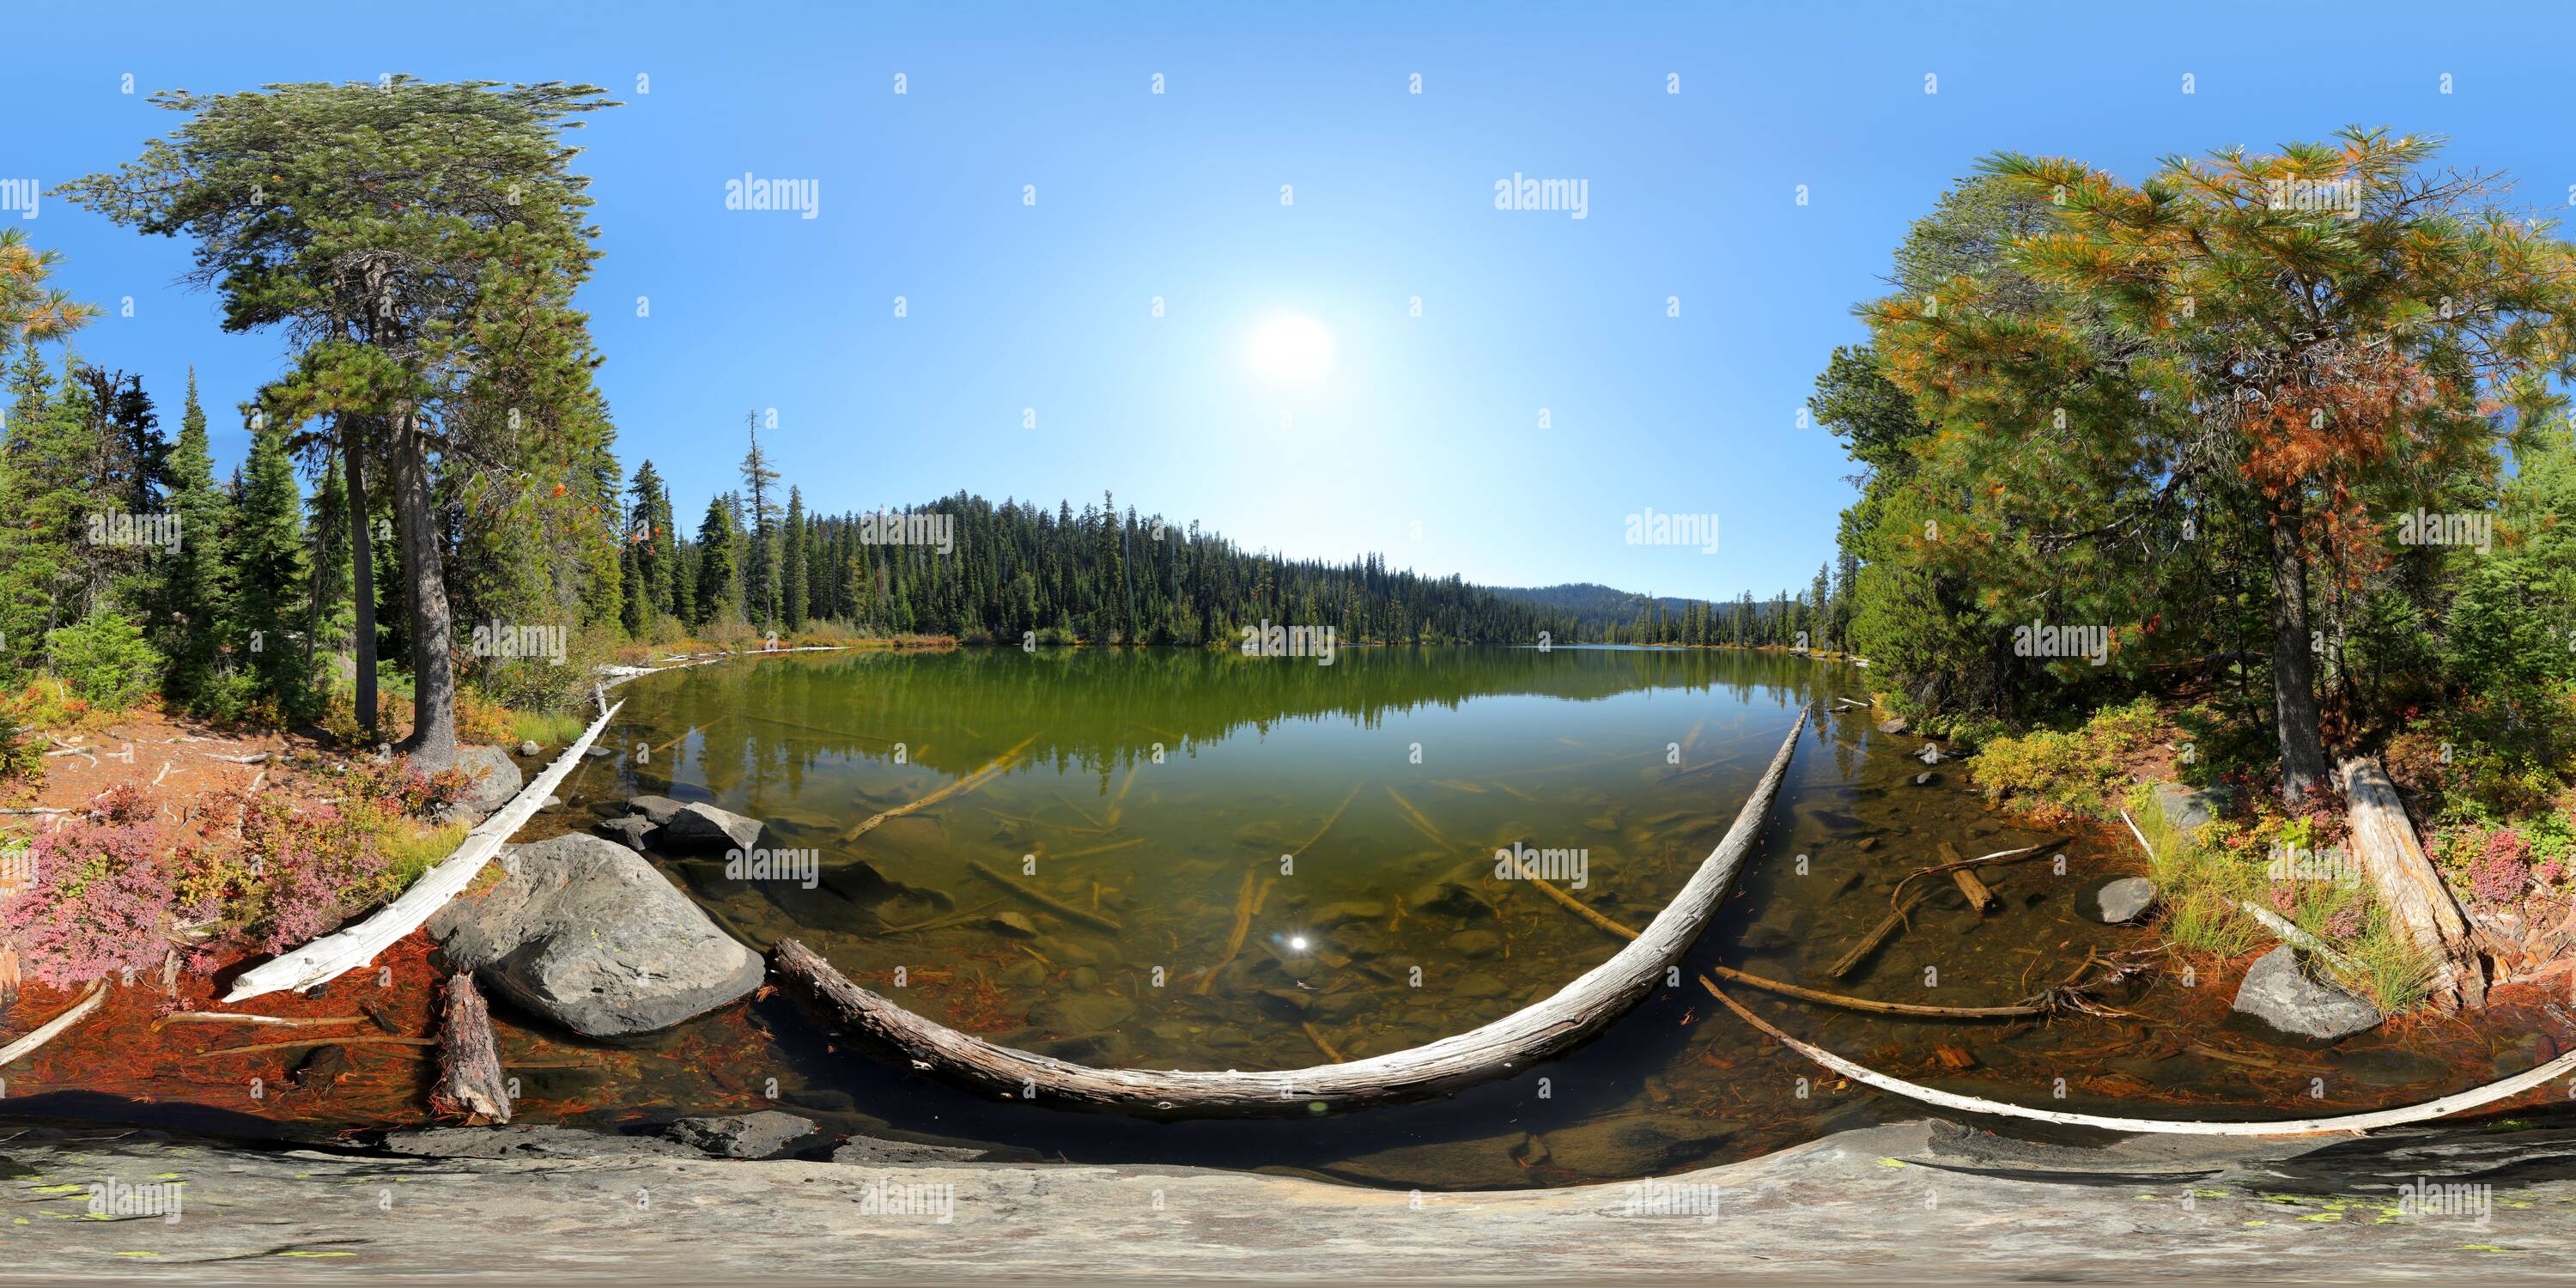 360 degree panoramic view of Pear Lake